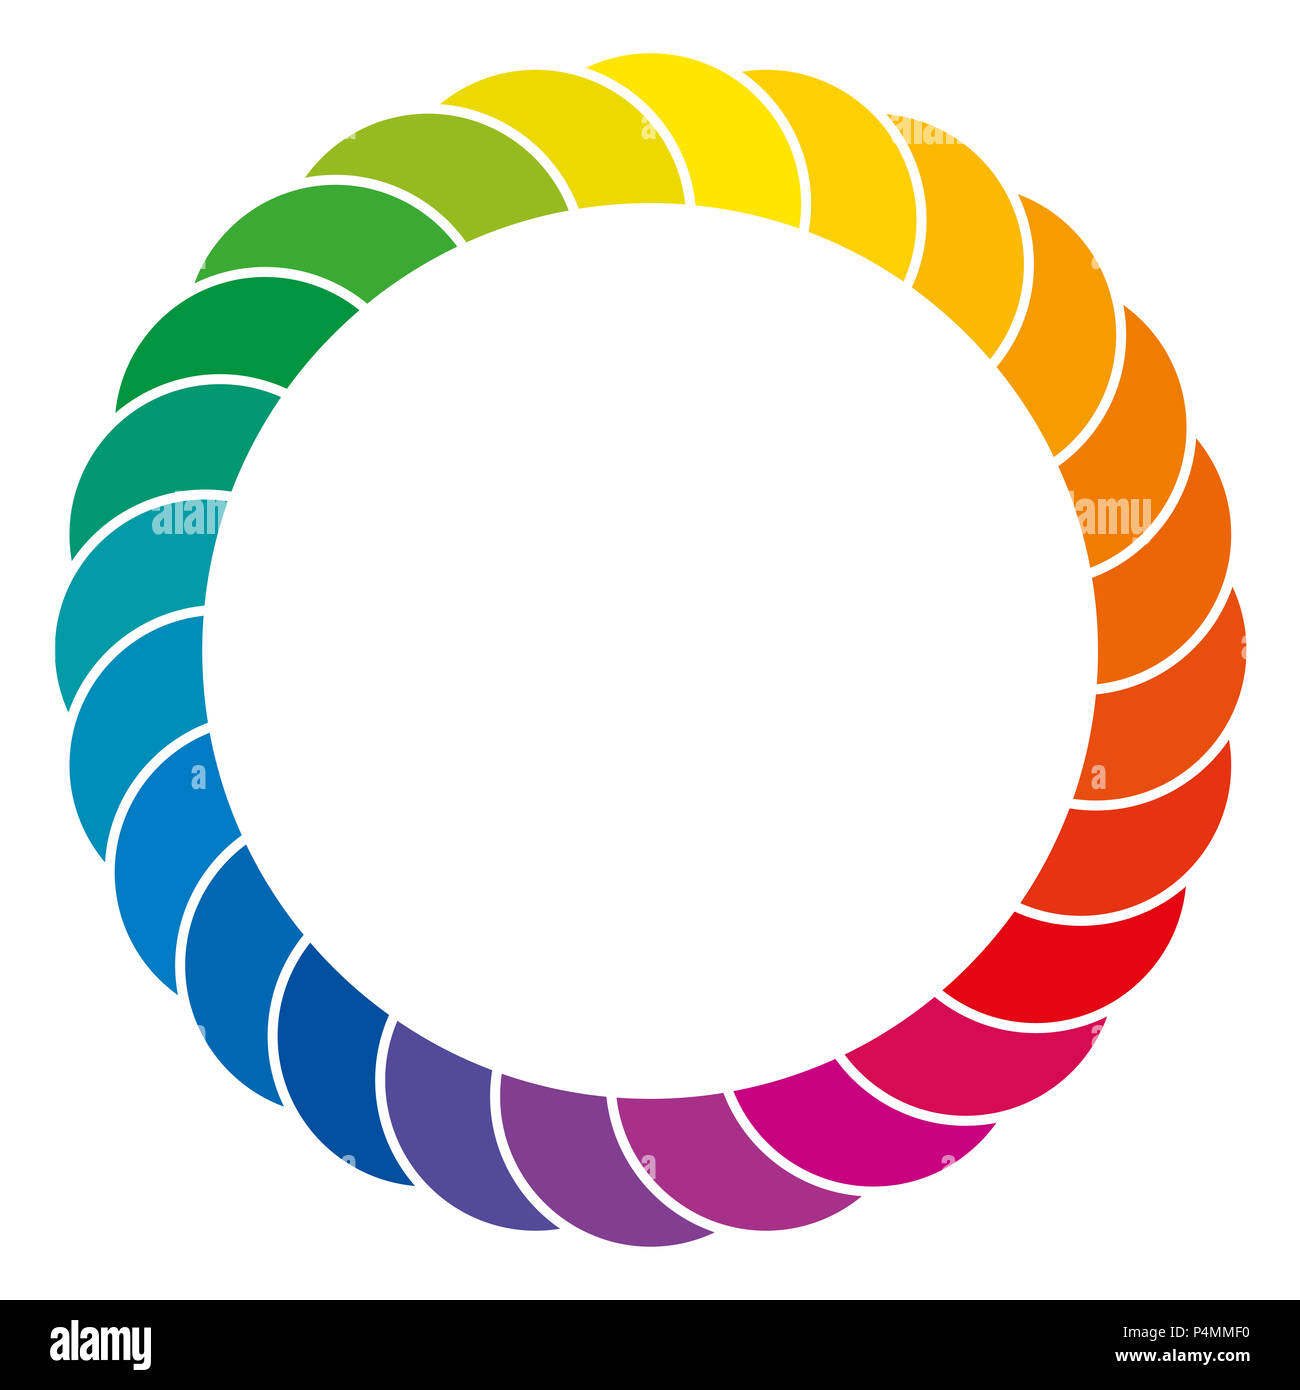 Fondo de color del arco iris. Espacio de color y el círculo de superposición de segmentos del espectro de colores, separados por líneas blancas. Aislados. Foto de stock